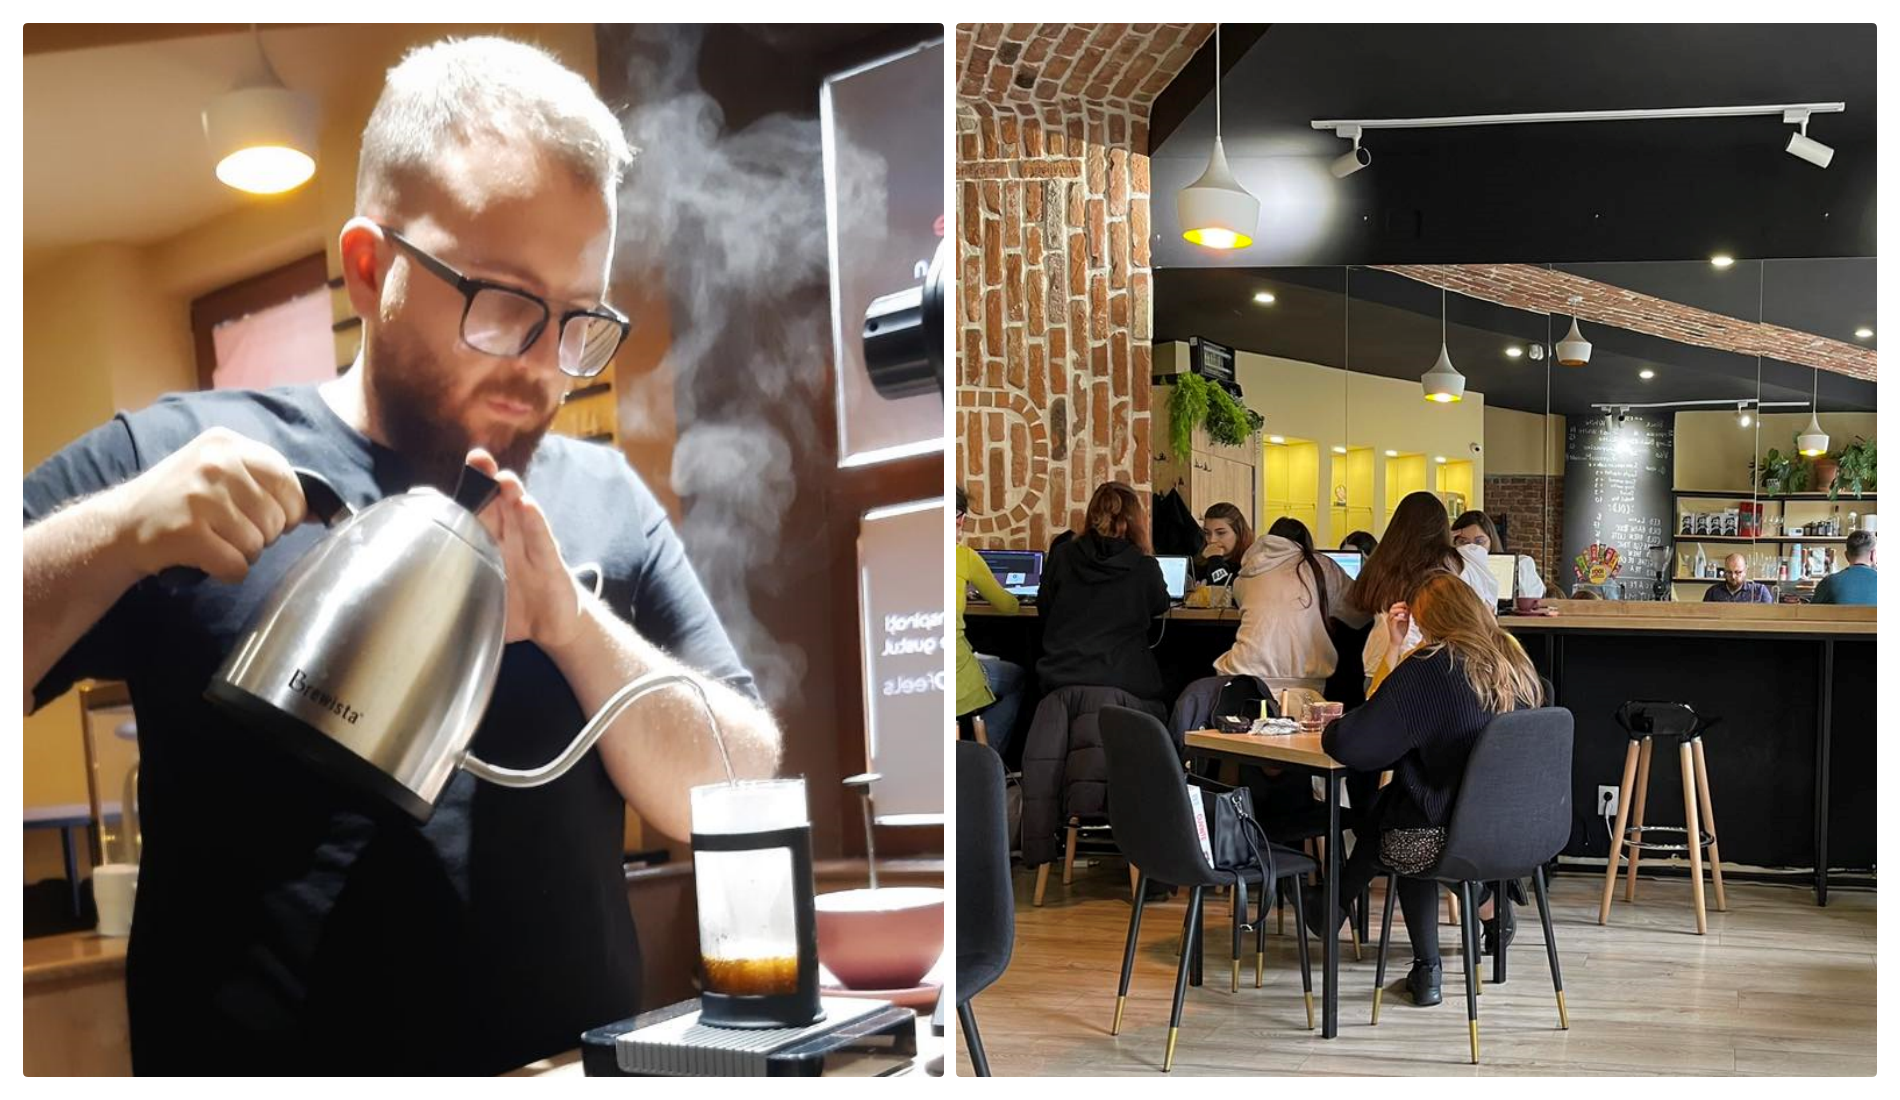 Cafeneaua socială, Cofeels, unde lucrează tineri cu dizabilități, a fost salvată de la faliment: ”Mulțumesc din suflet, oameni buni!”